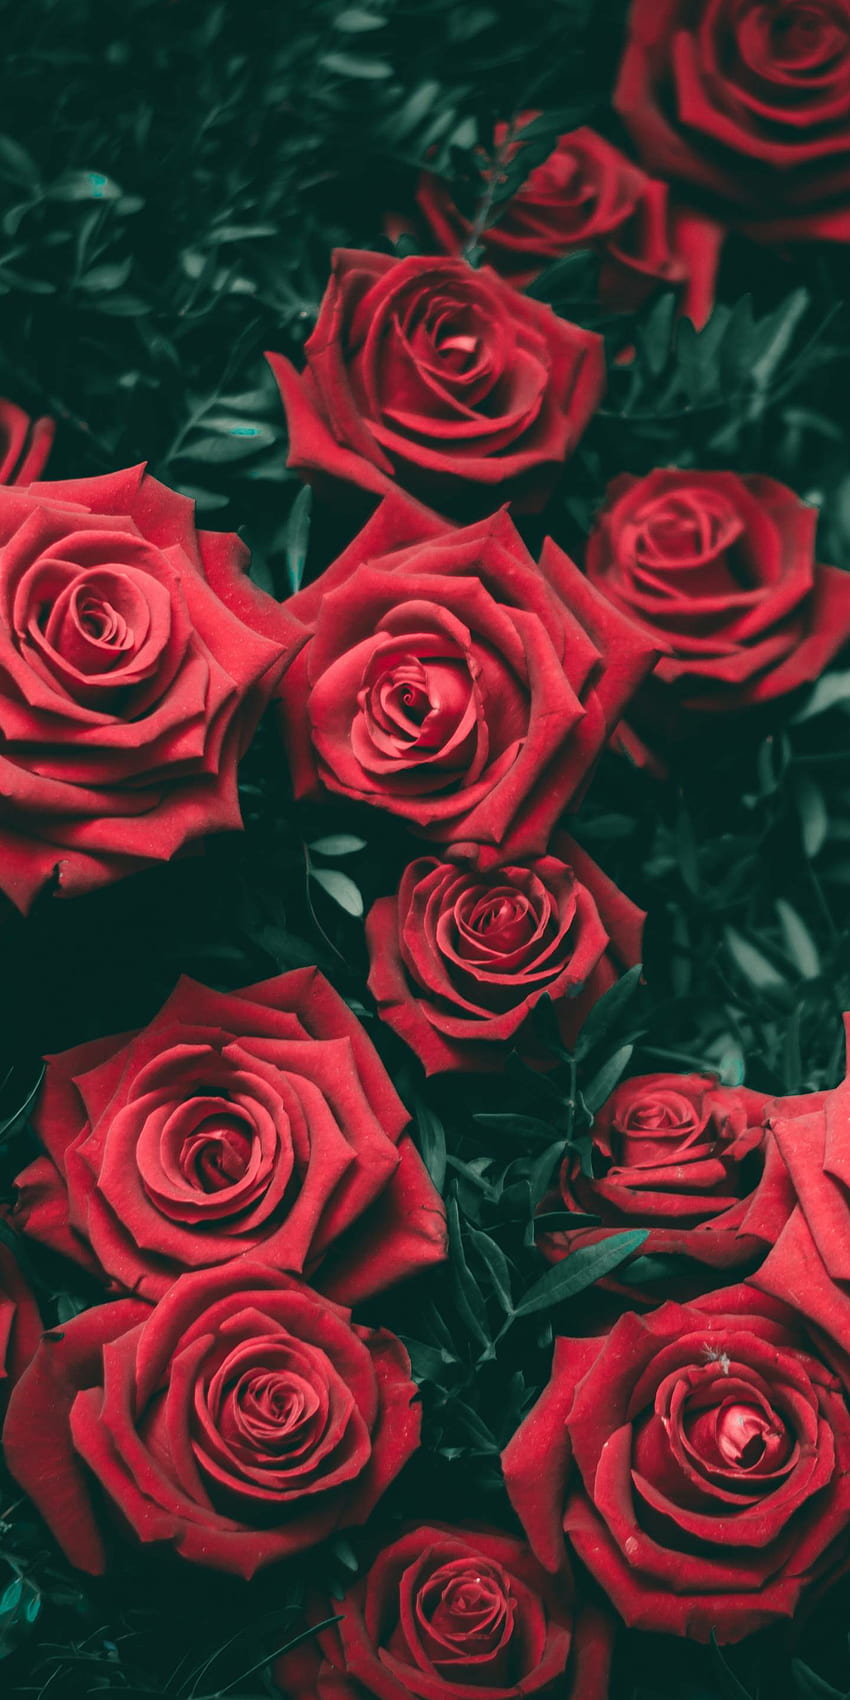 Chiêm ngưỡng vẻ đẹp thanh lịch của hoa hồng đỏ thông qua thẩm mỹ đỏ hồng sang trọng. Màu đỏ sẽ giúp làm tôn lên sự quý phái của bức tranh và hoa hồng sẽ mang lại sự ngọt ngào cho không gian nơi bức tranh nằm trong.